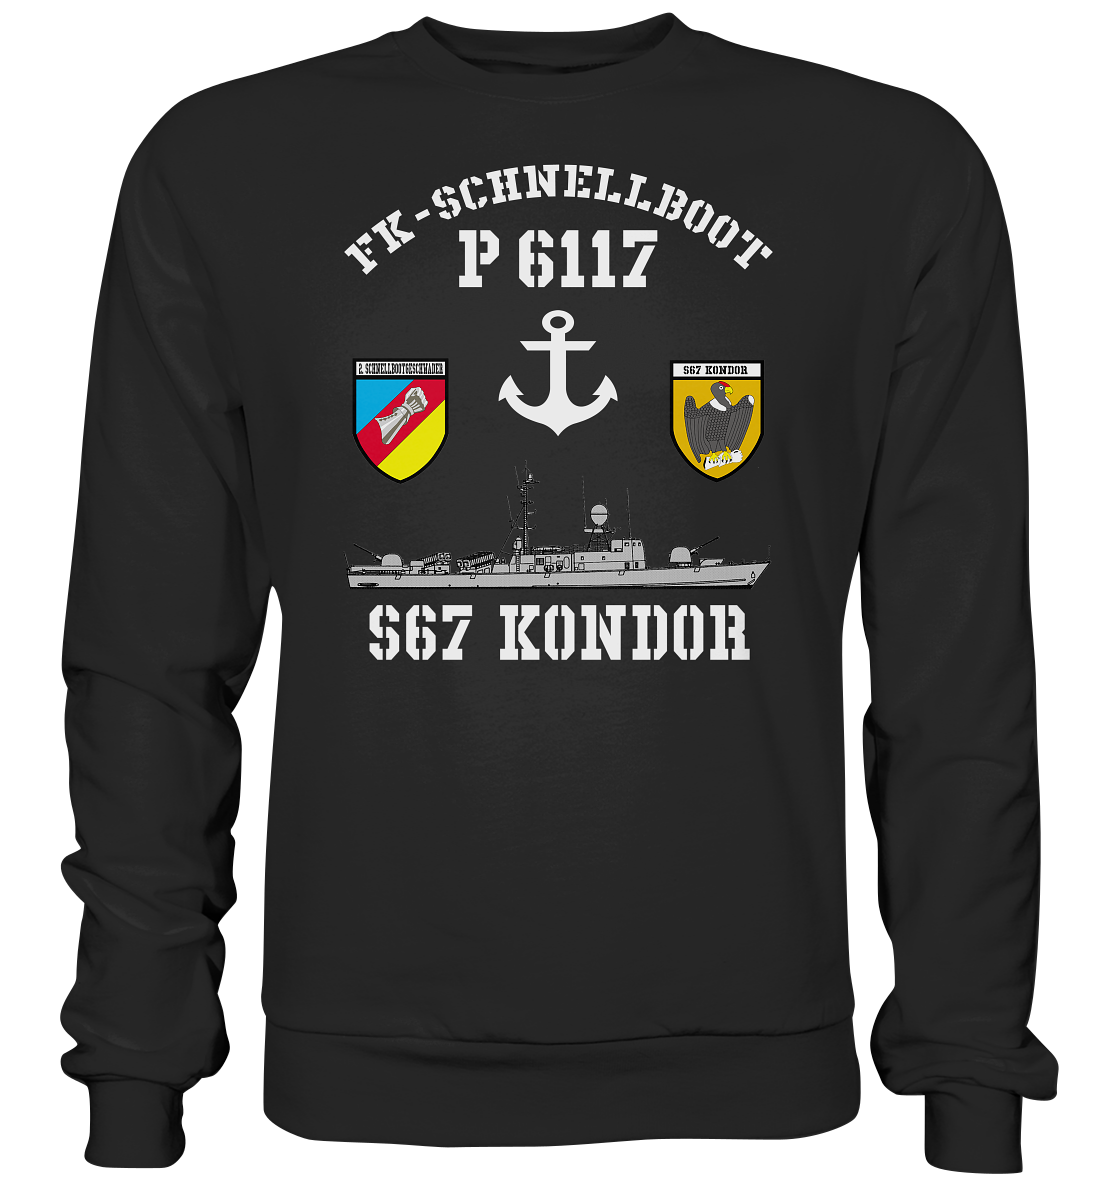 FK-Schnellboot P6117 KONDOR 2.SG Anker - Premium Sweatshirt